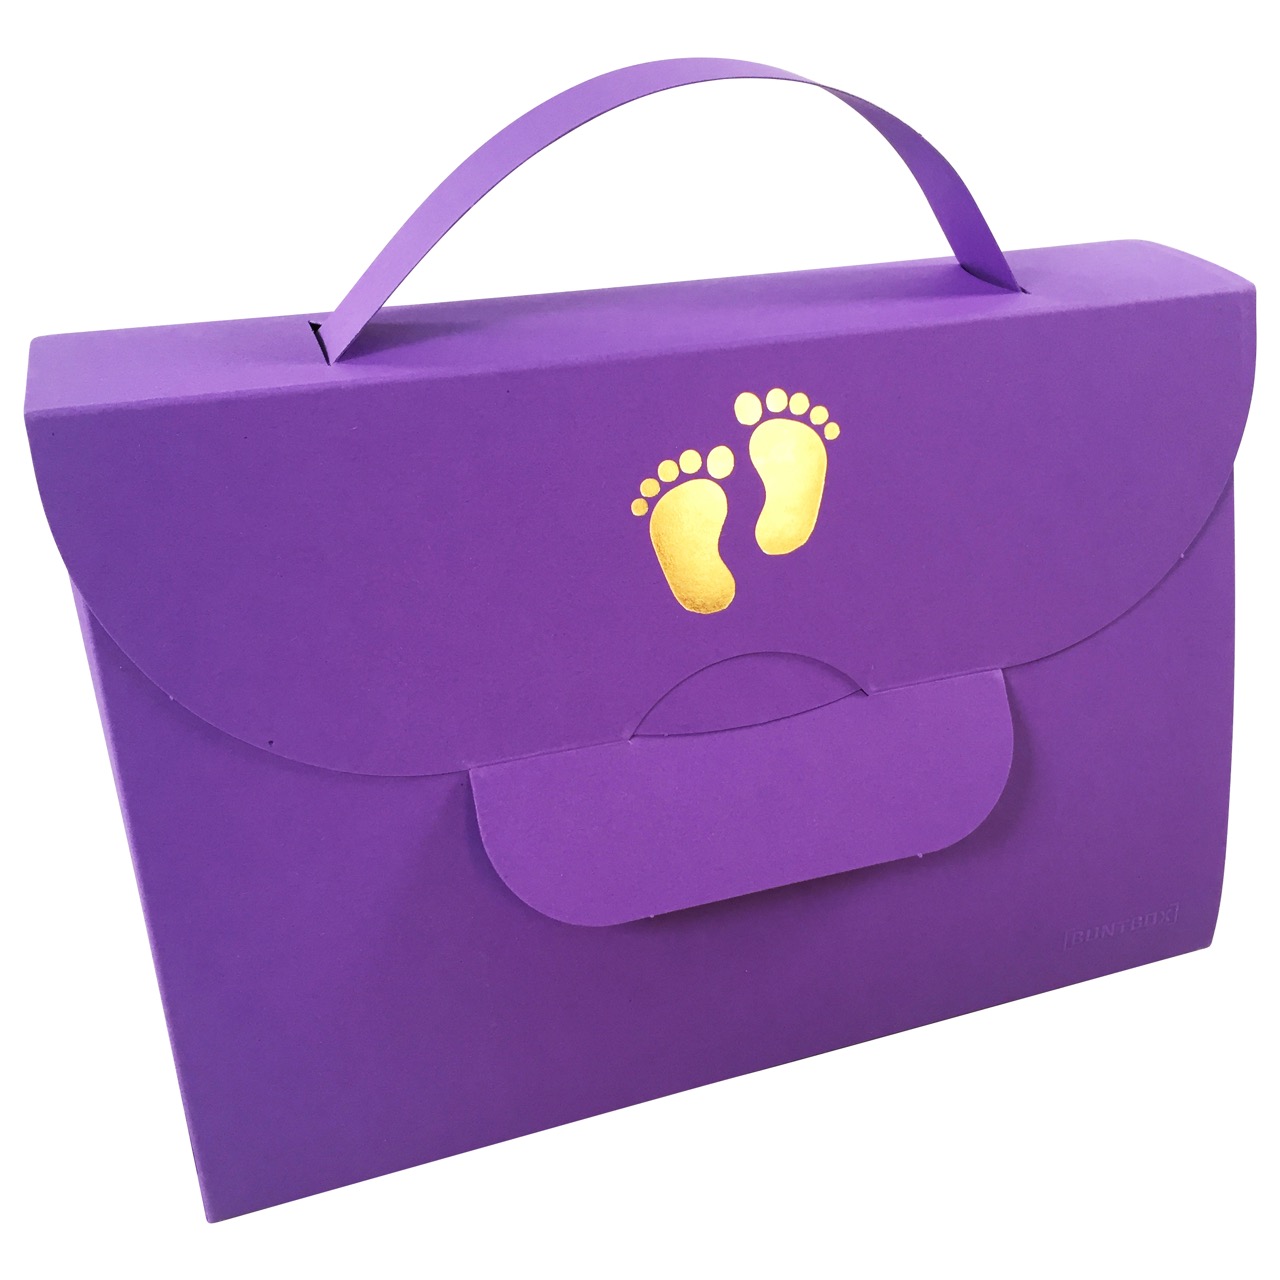 Buntbox Handbag XL Baby Foot in Lavendel